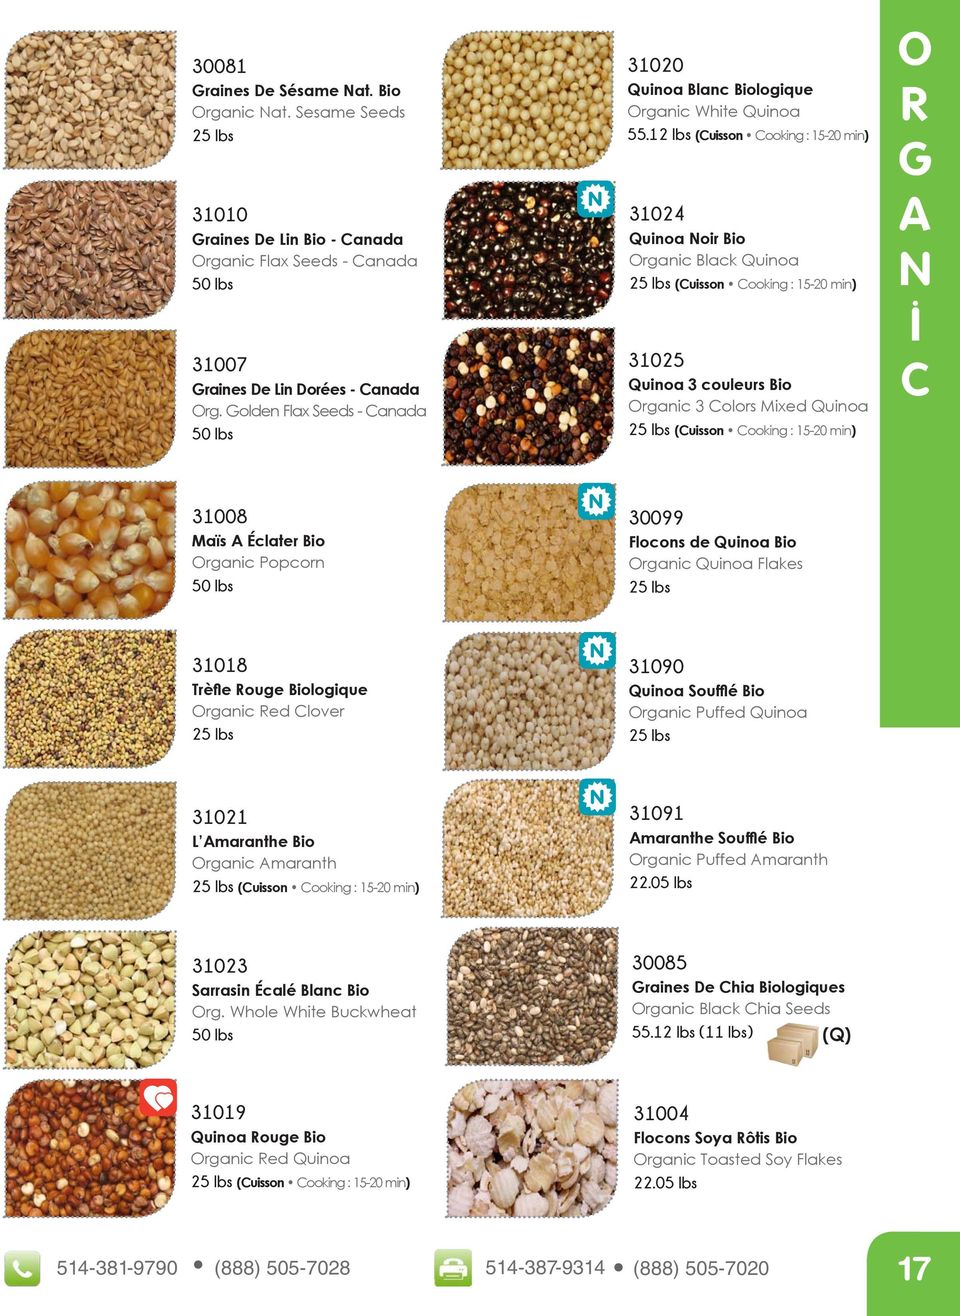 12 lbs (Cuisson Cooking : 15-20 min) 31024 Quinoa Noir Bio rganic Black Quinoa (Cuisson Cooking : 15-20 min) 31025 Quinoa 3 couleurs Bio rganic 3 Colors Mixed Quinoa (Cuisson Cooking : 15-20 min) R G